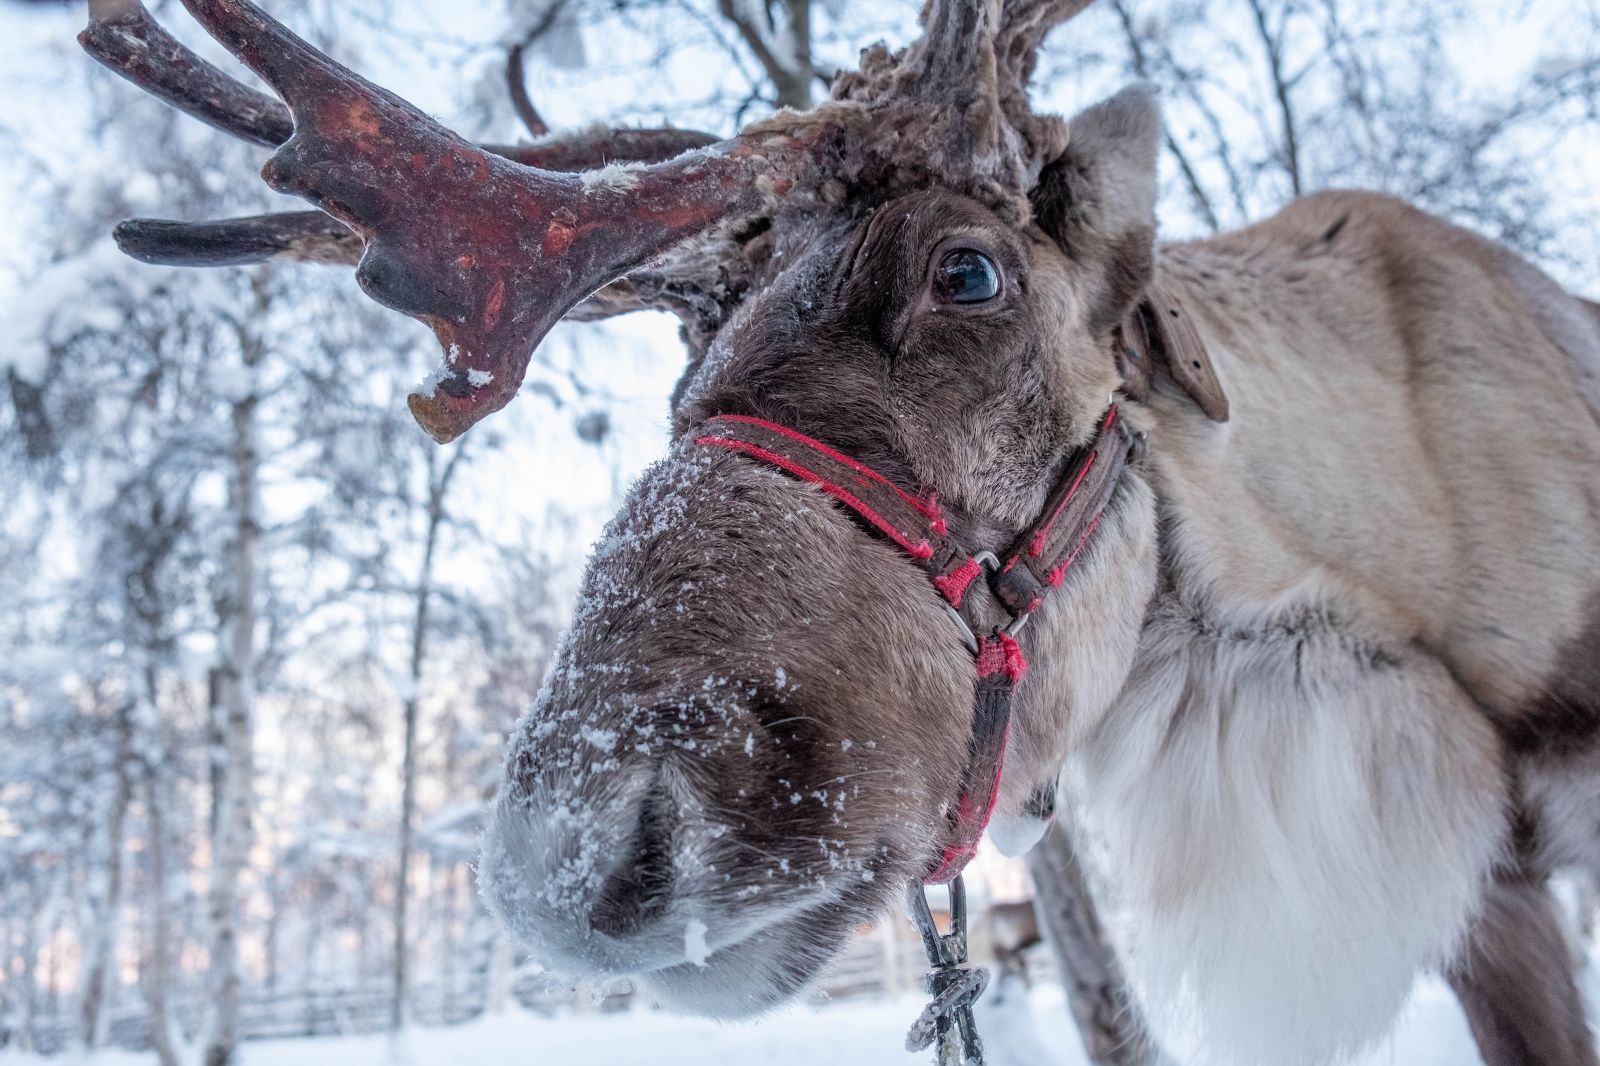 A Scandinavian reindeer in the snow